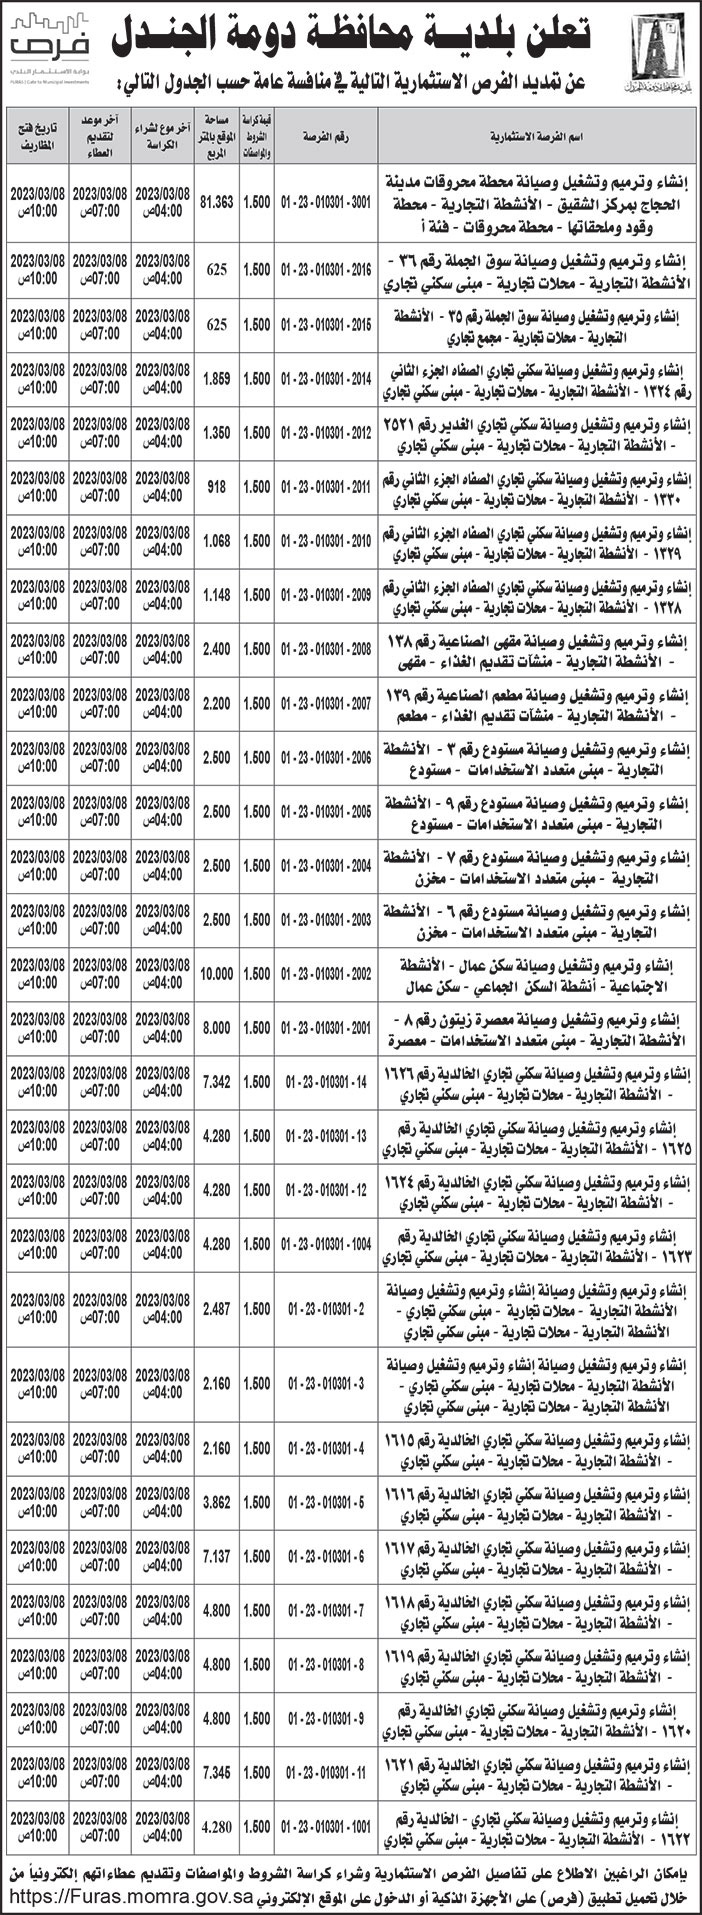 إعلان بلدية محافظة دومة الجندل 